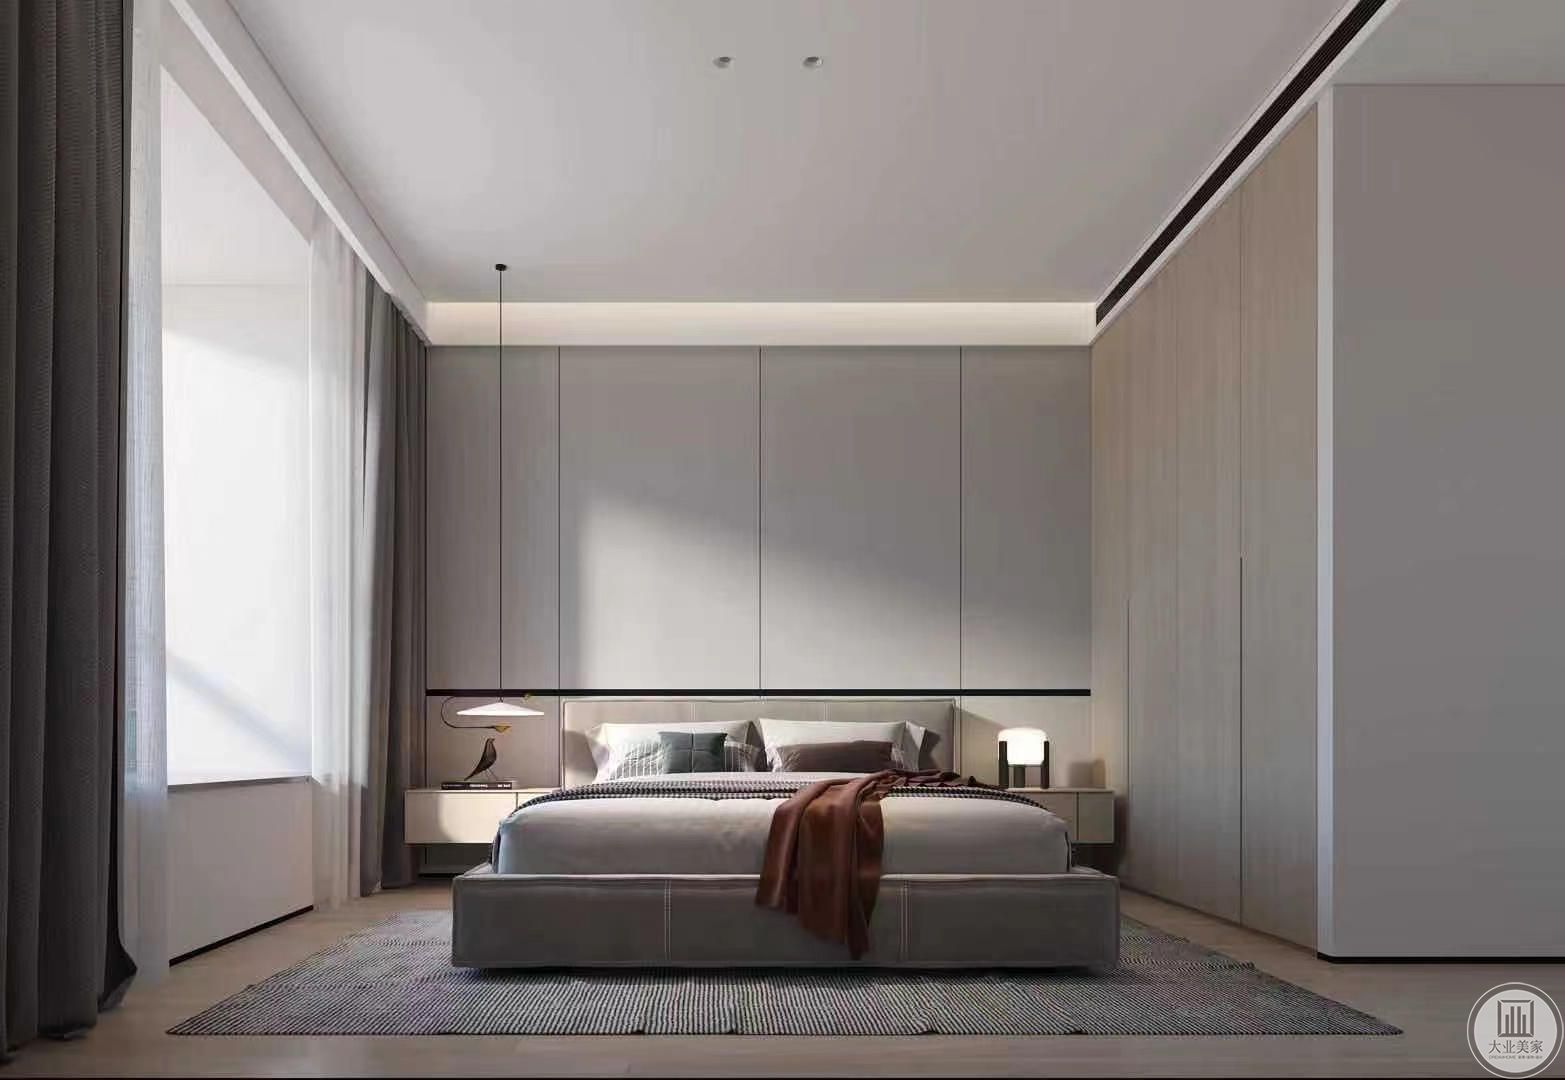 卧室造型简约，无繁琐装饰，木地板增加了空间的亲和度